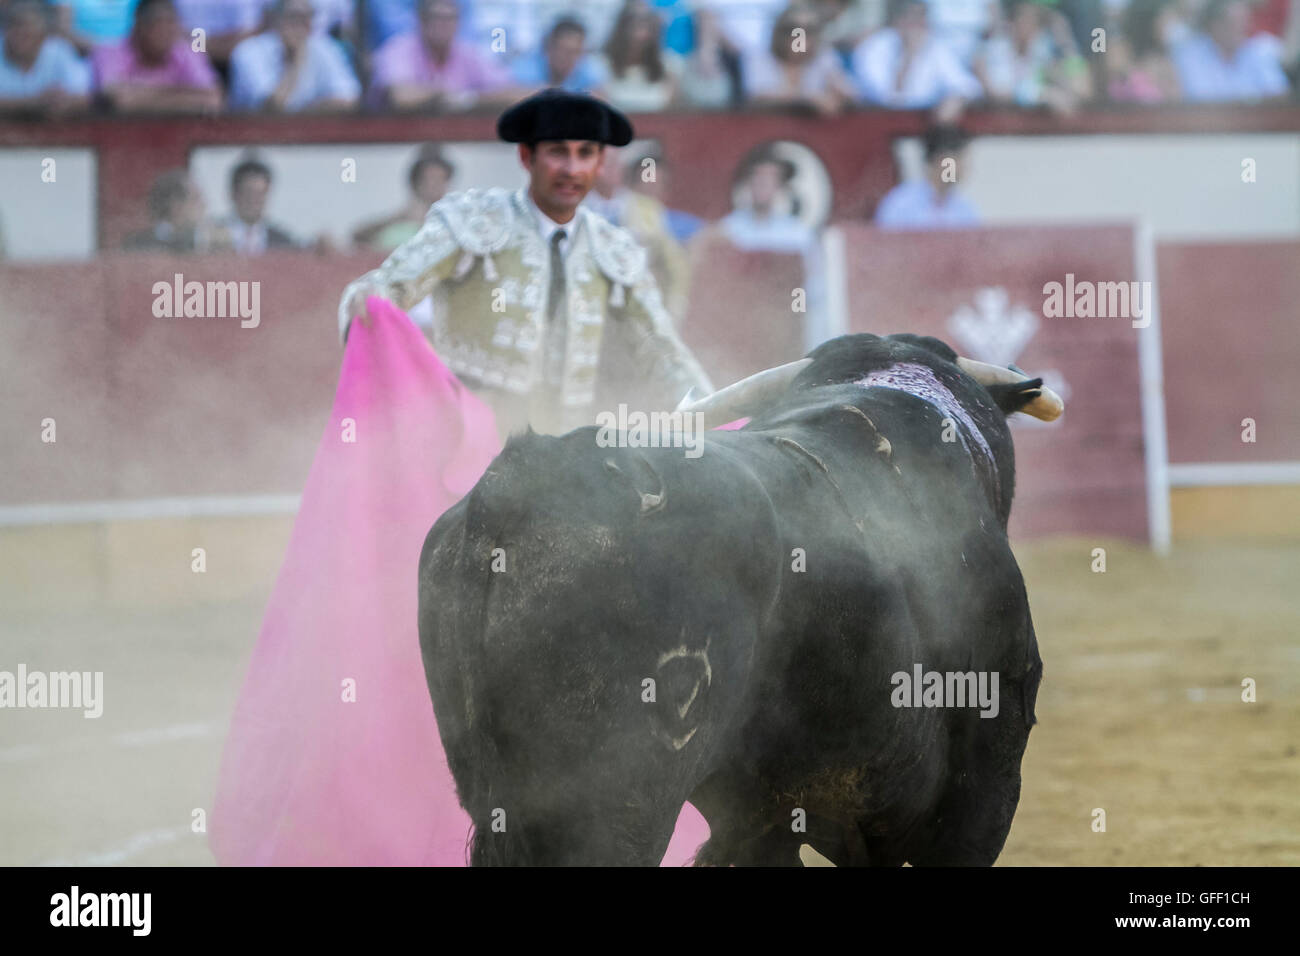 Pozoblanco, SPAIN, September 5, 2010: The Spanish Bullfighter bullfighting with the crutch in the Bullring of Pozoblanco, Spain Stock Photo